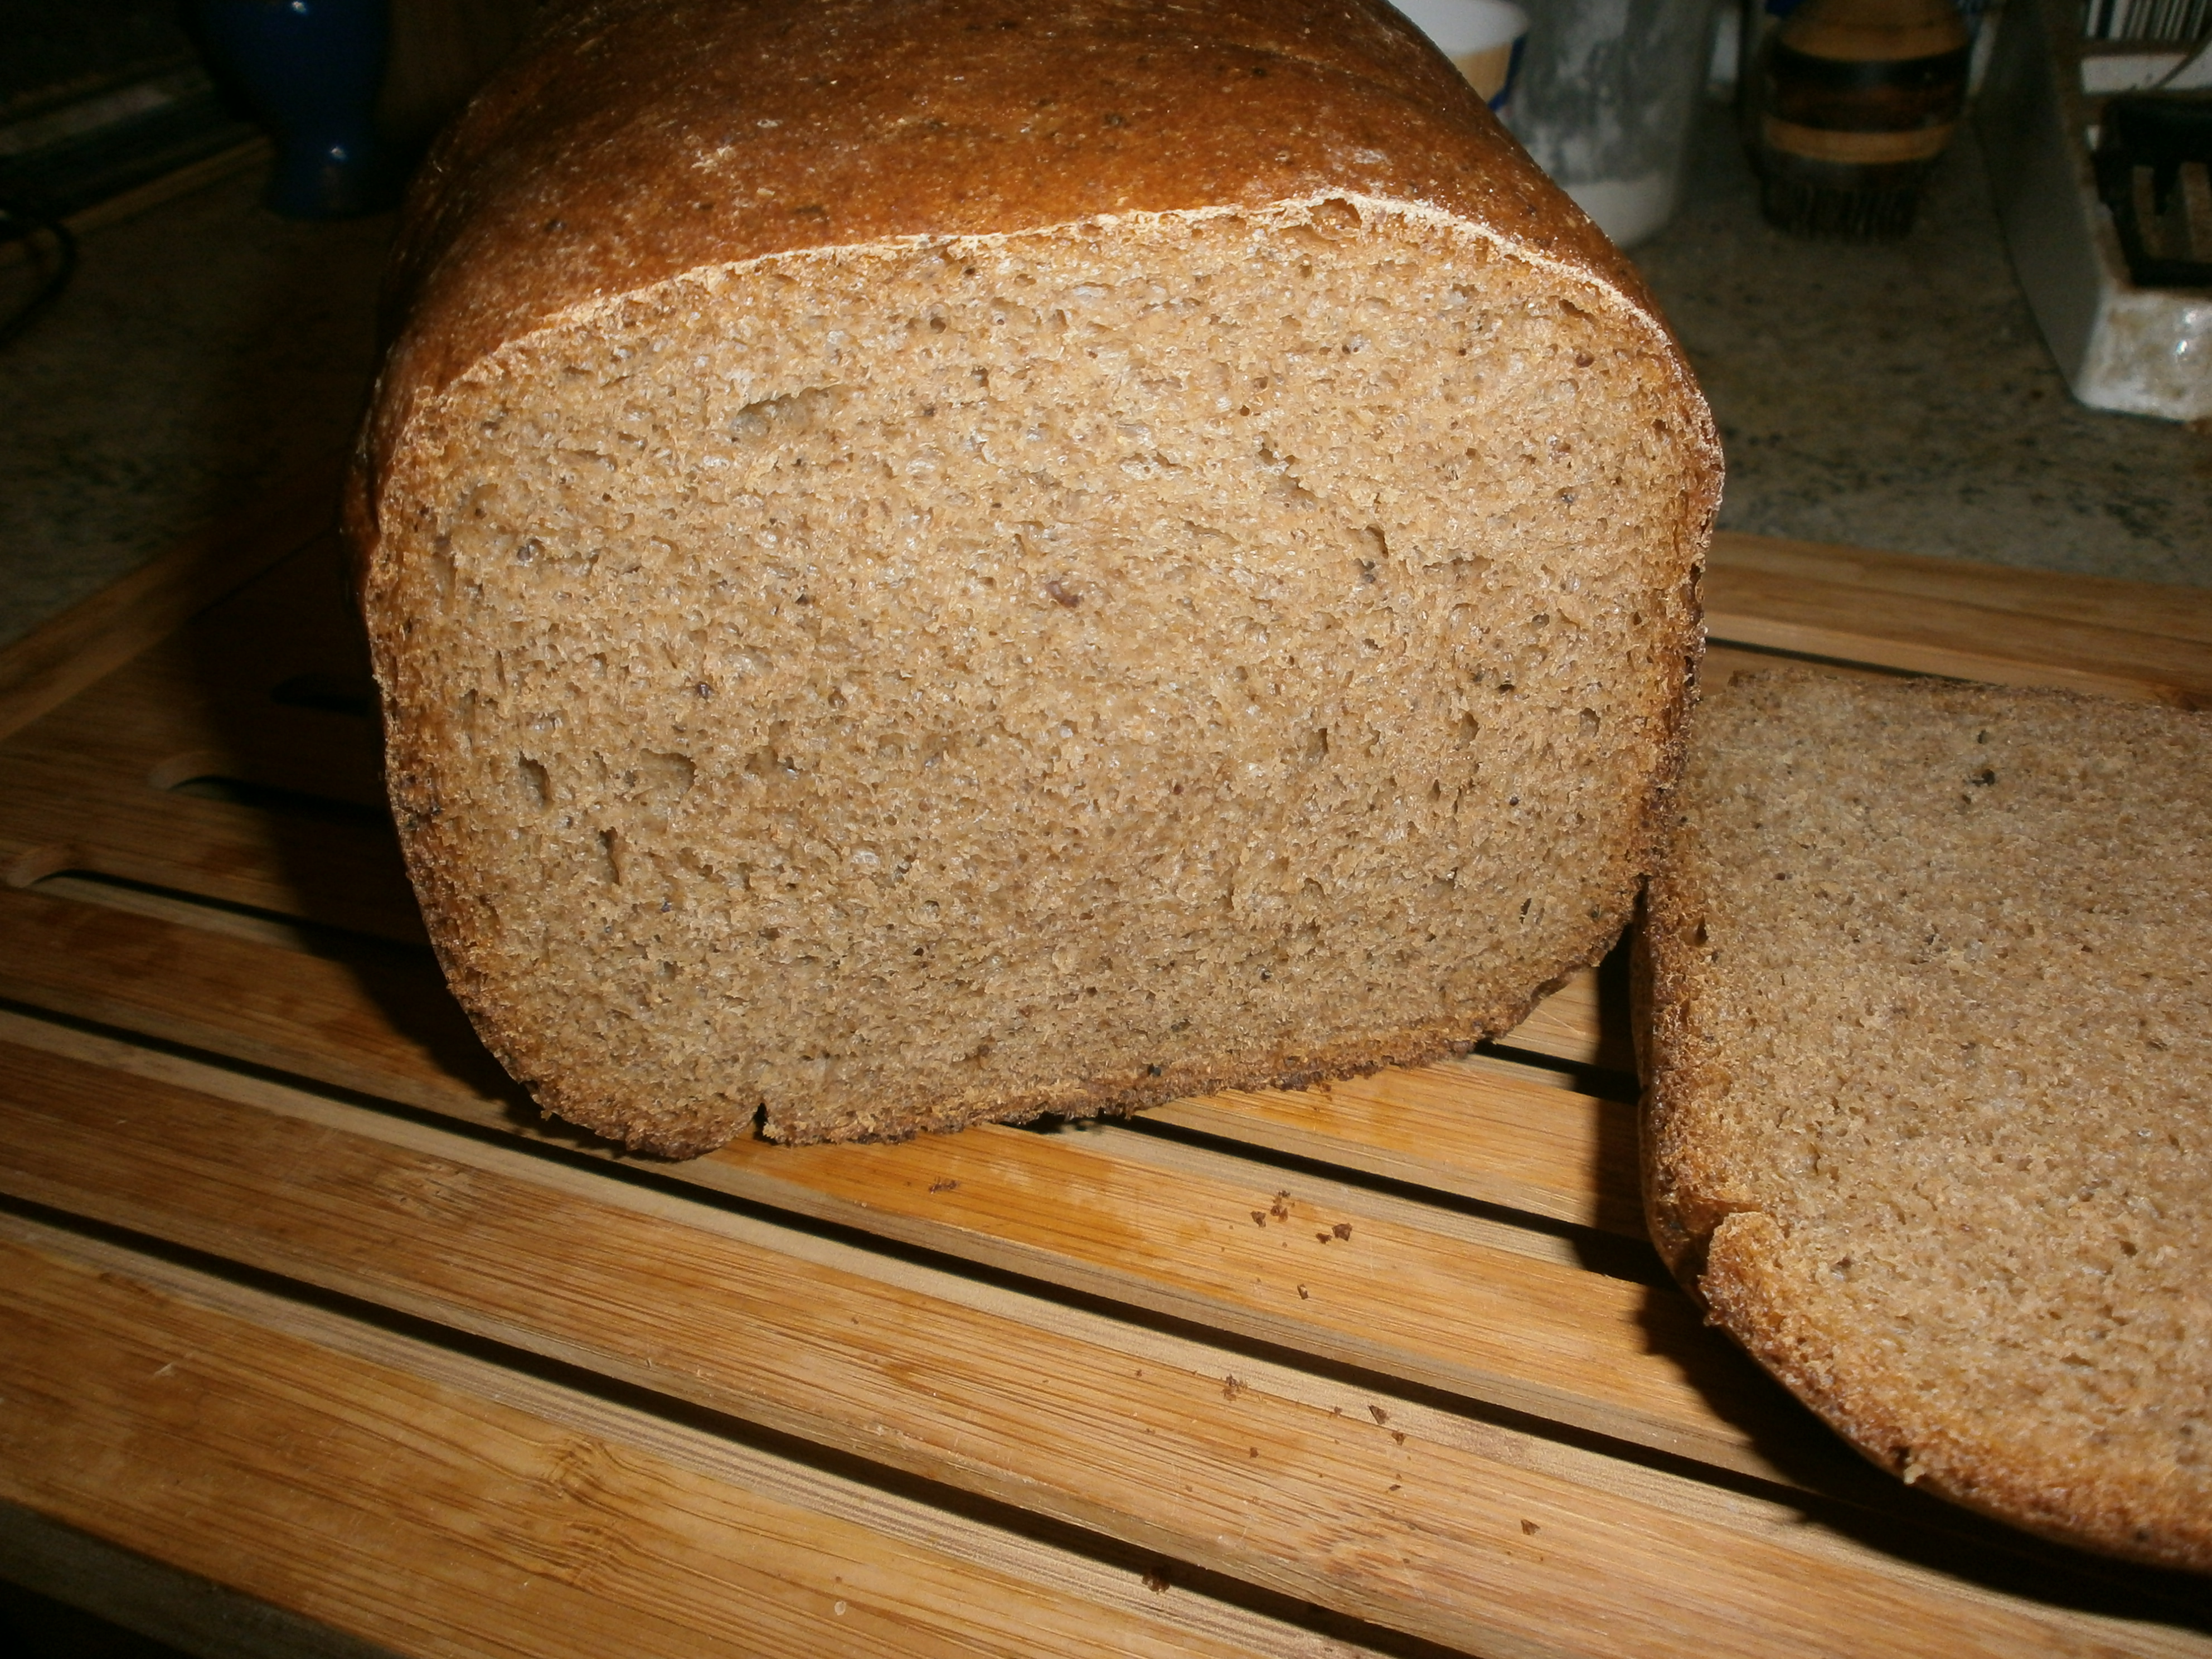 Цельнозерновой хлеб в мультиварке. Хлеб ржаной обдирной. Хлеб пшеничный цельнозерновой. Ржаной цельнозерновой хлеб. Цельнозерновая мука хлеб.